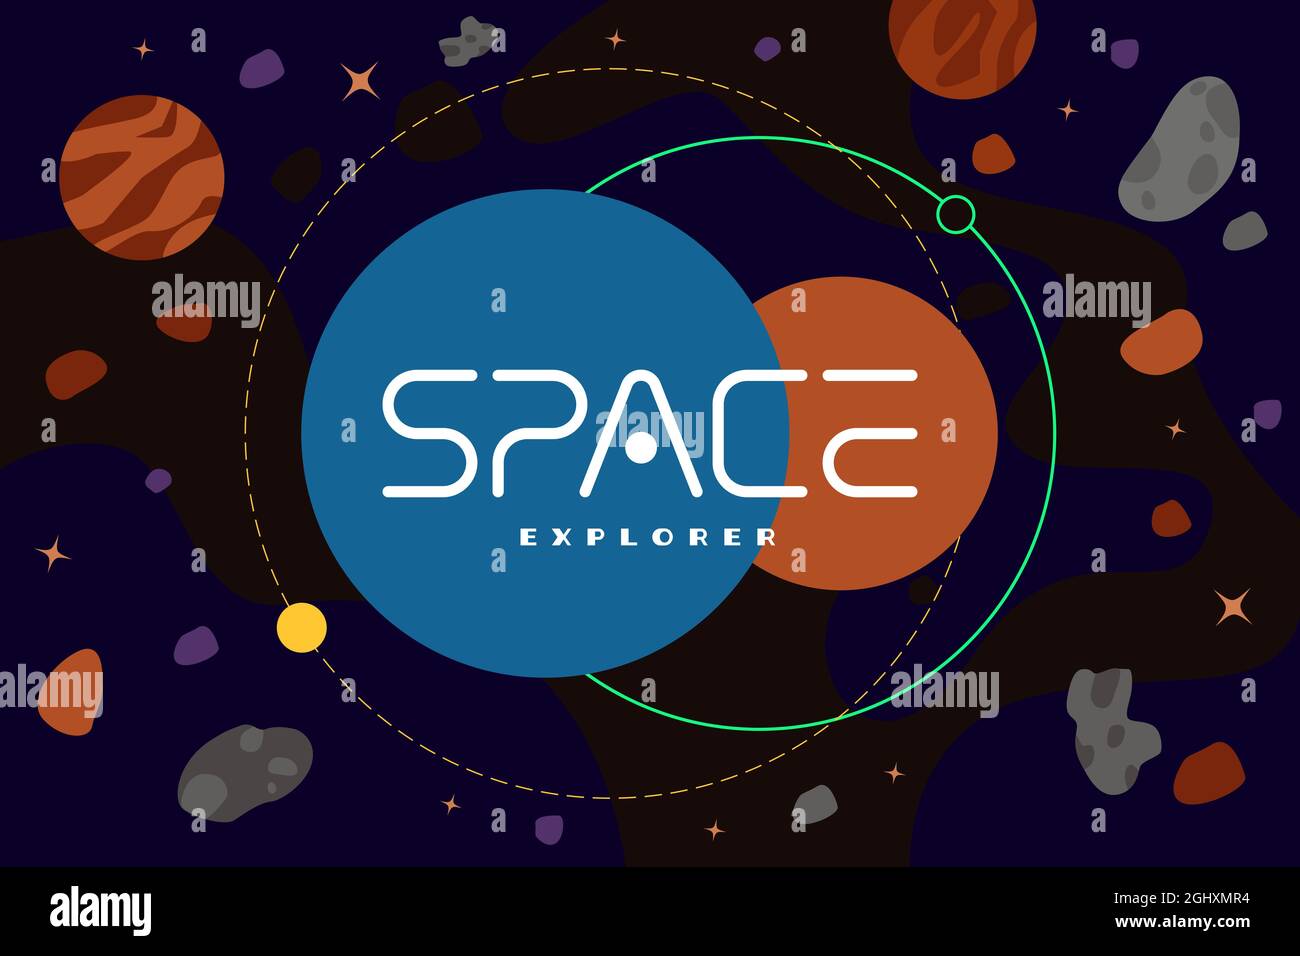 Space Explorer Poster Konzept. Galaxy Exploration Company Logo-Vorlage im Universum mit Himmelskörpern, Astroiden und Nebel. Futuristisches Bannerdesign mit Sternen. Symbol für die Marke Cosmic Travel Stock Vektor